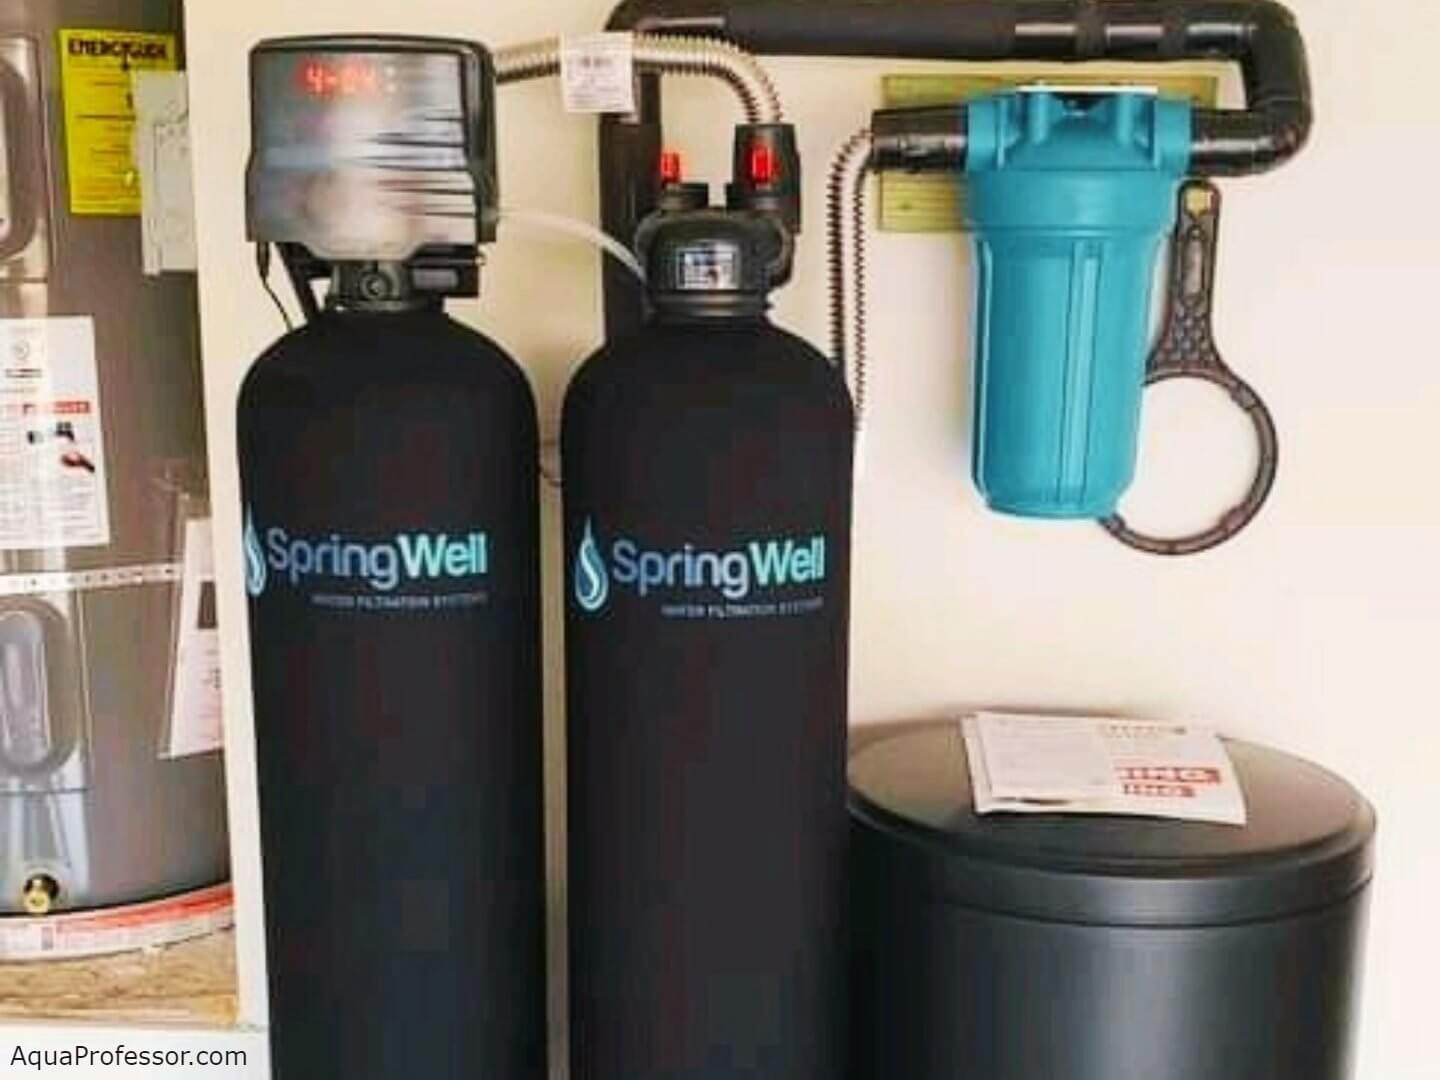 SpringWell SS1 Salt-Based Water Softener